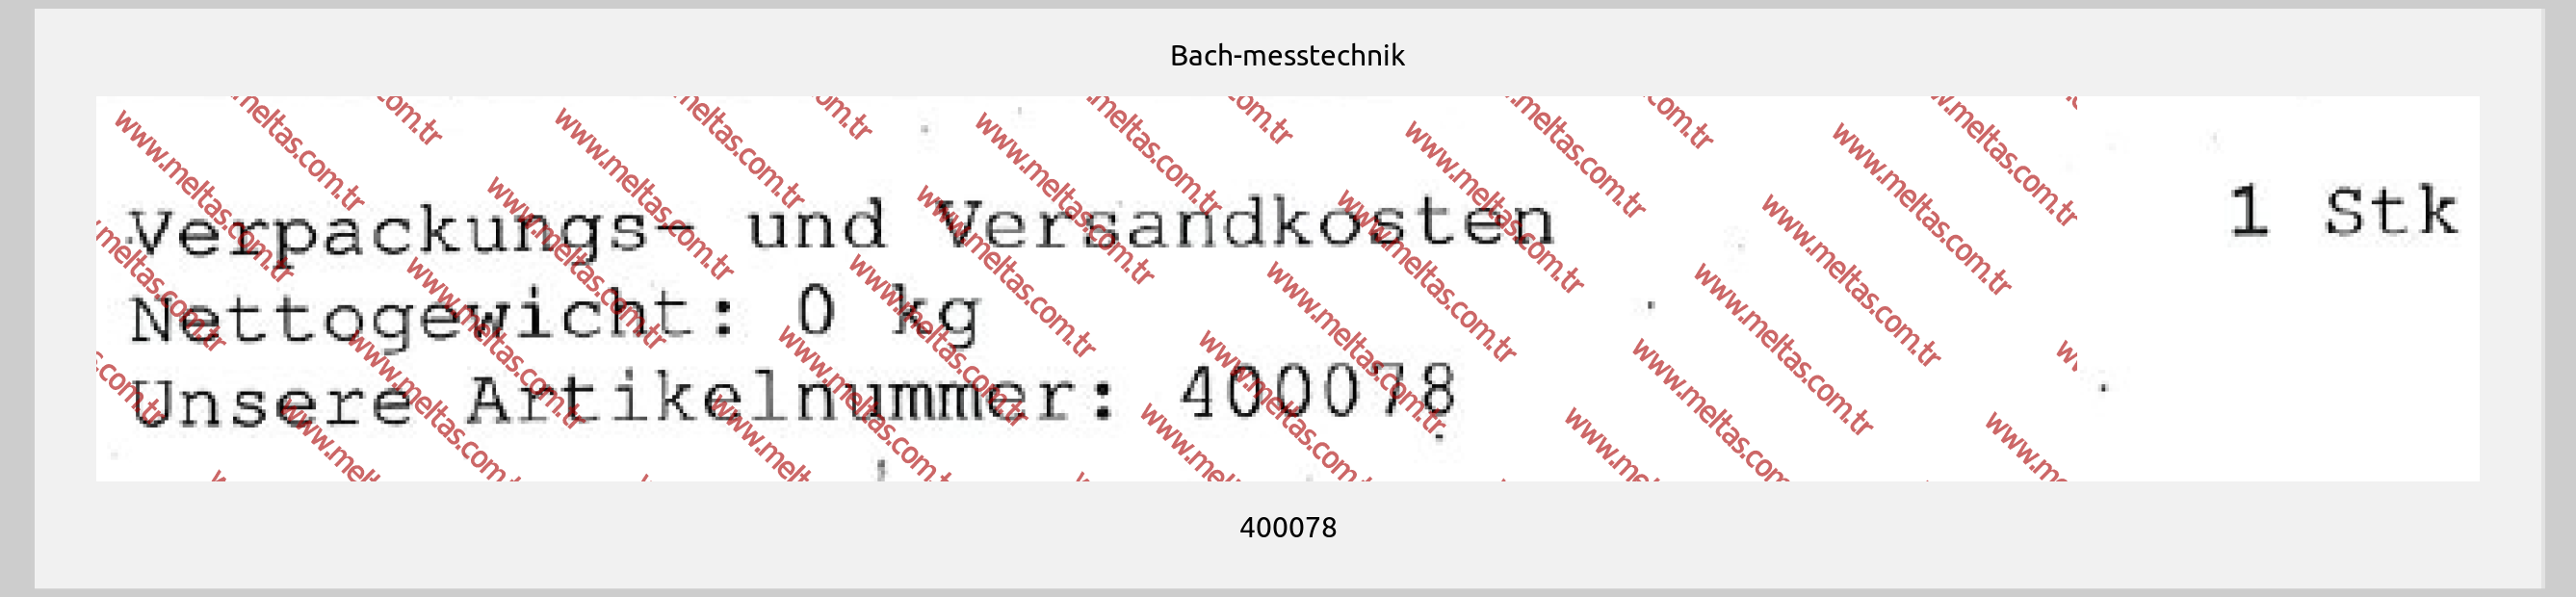 Bach-messtechnik - 400078